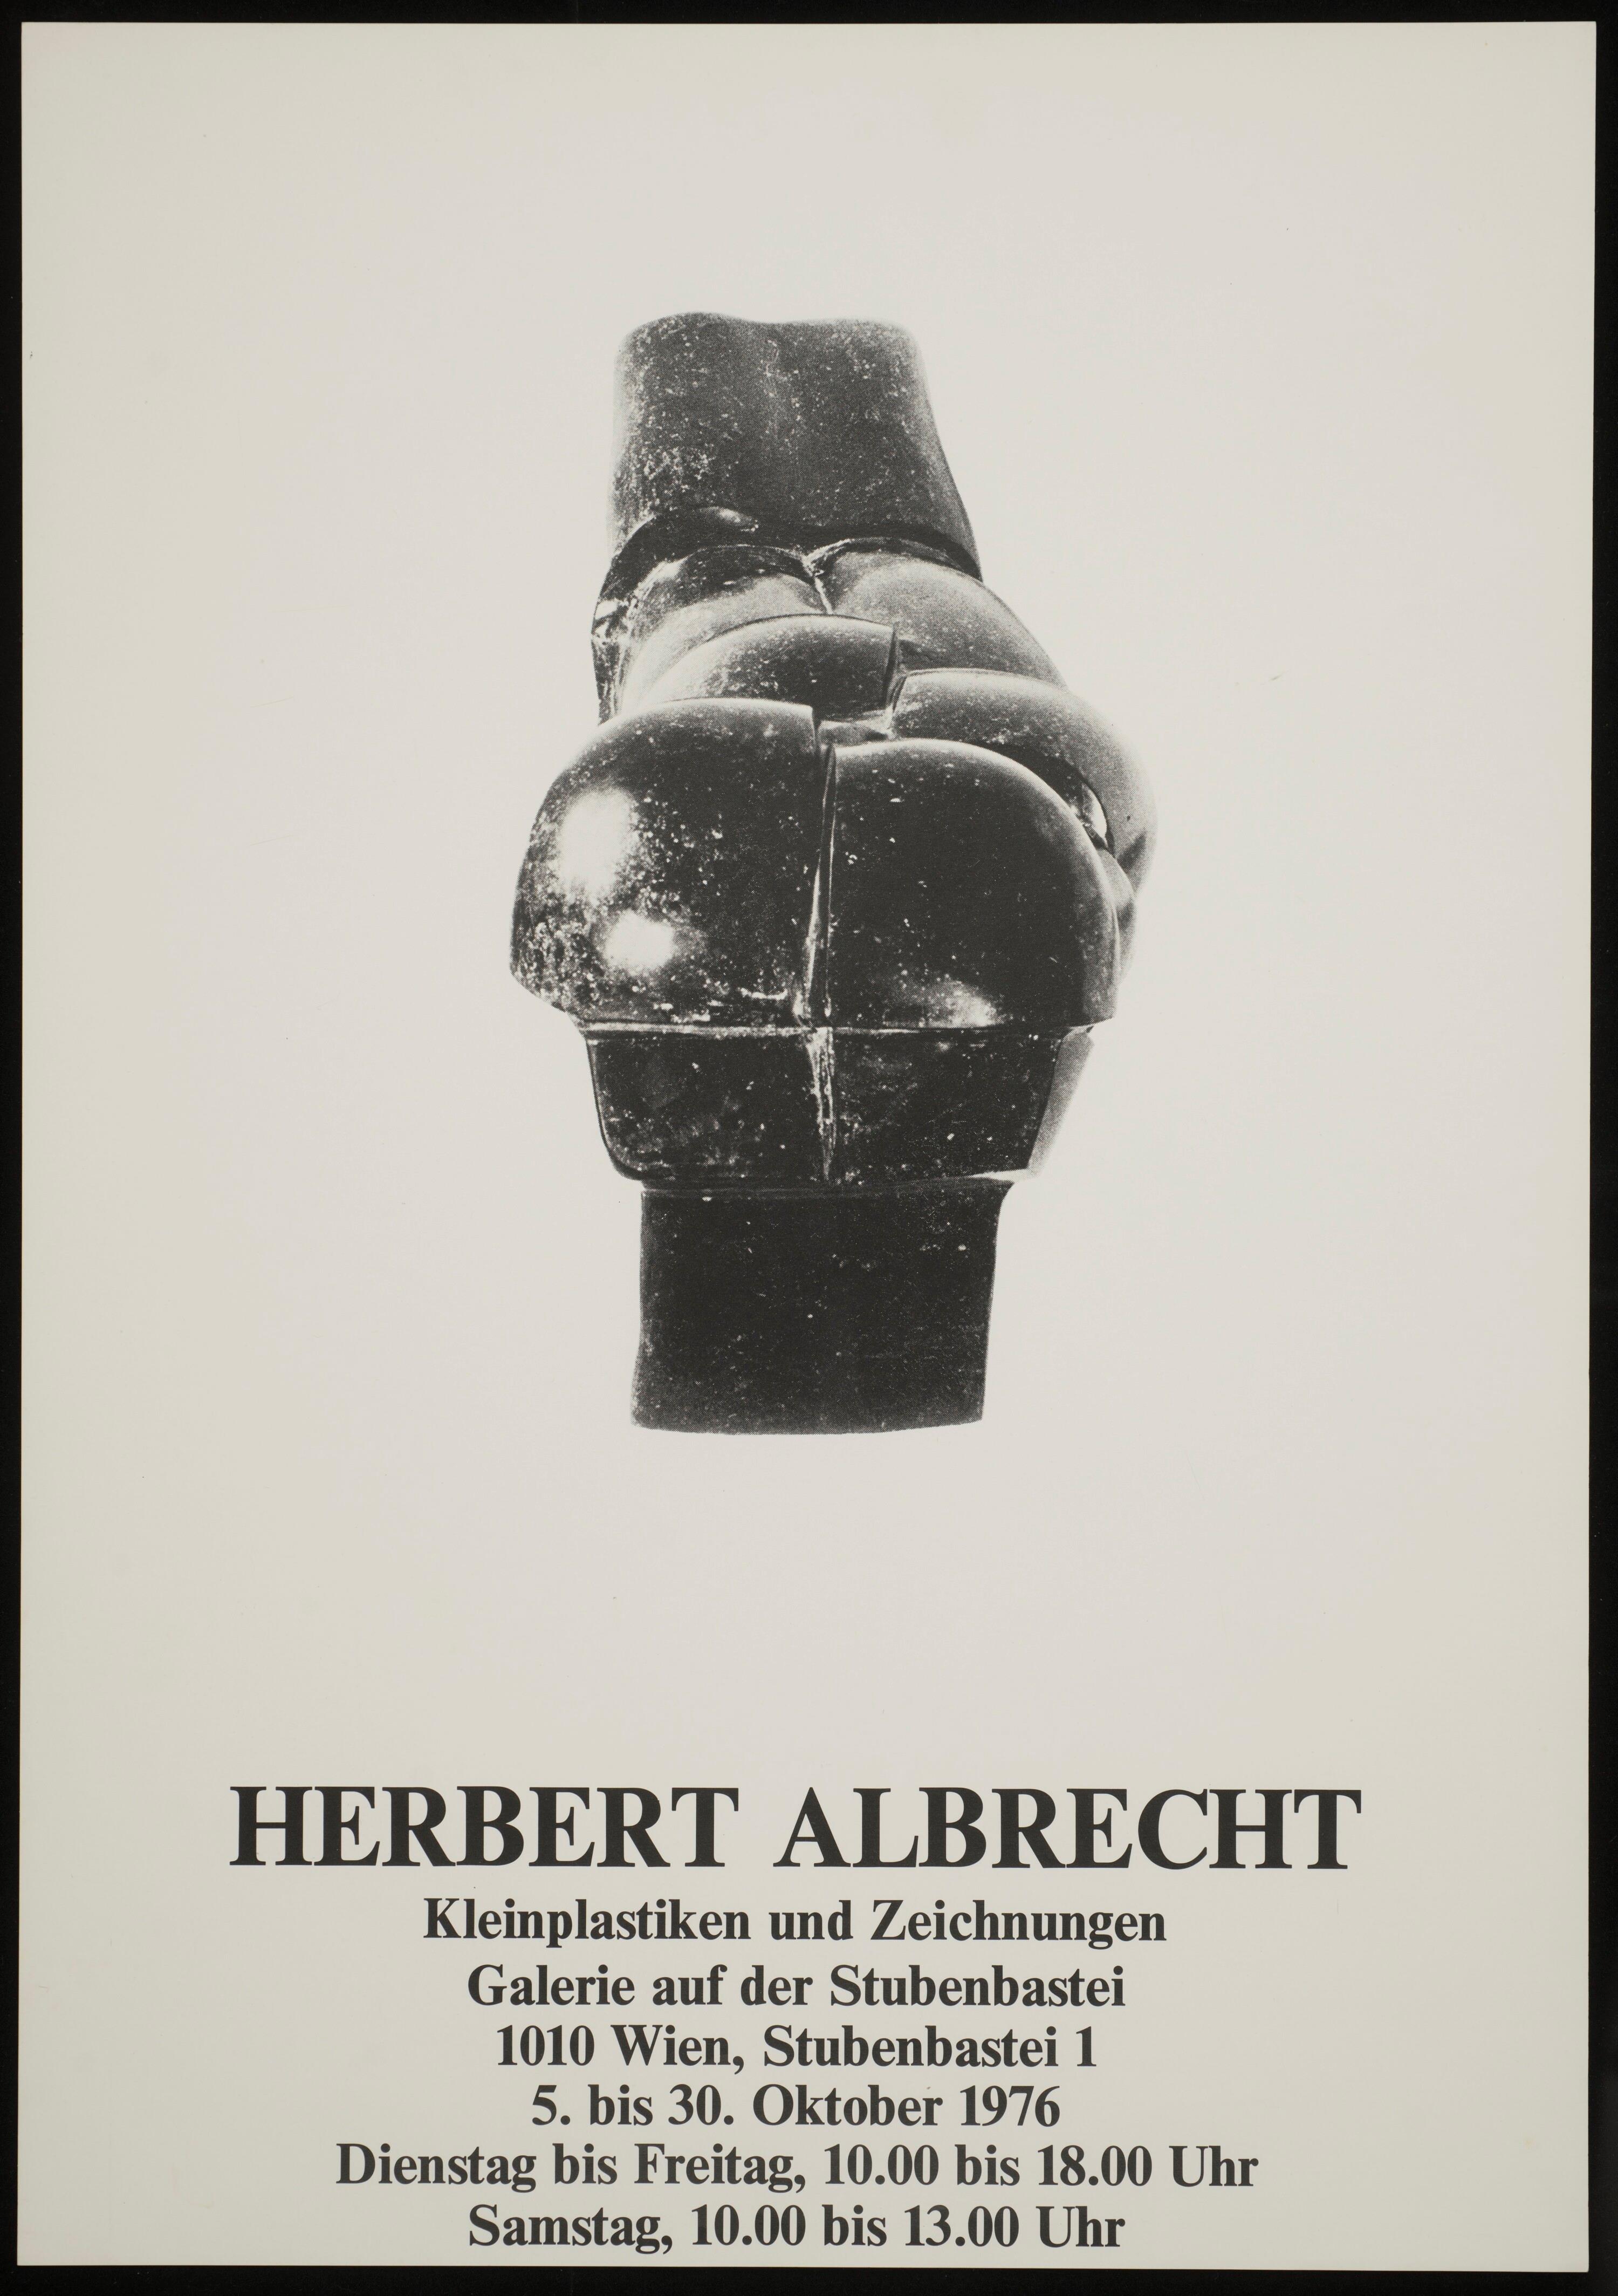 Herbert Albrecht></div>


    <hr>
    <div class=